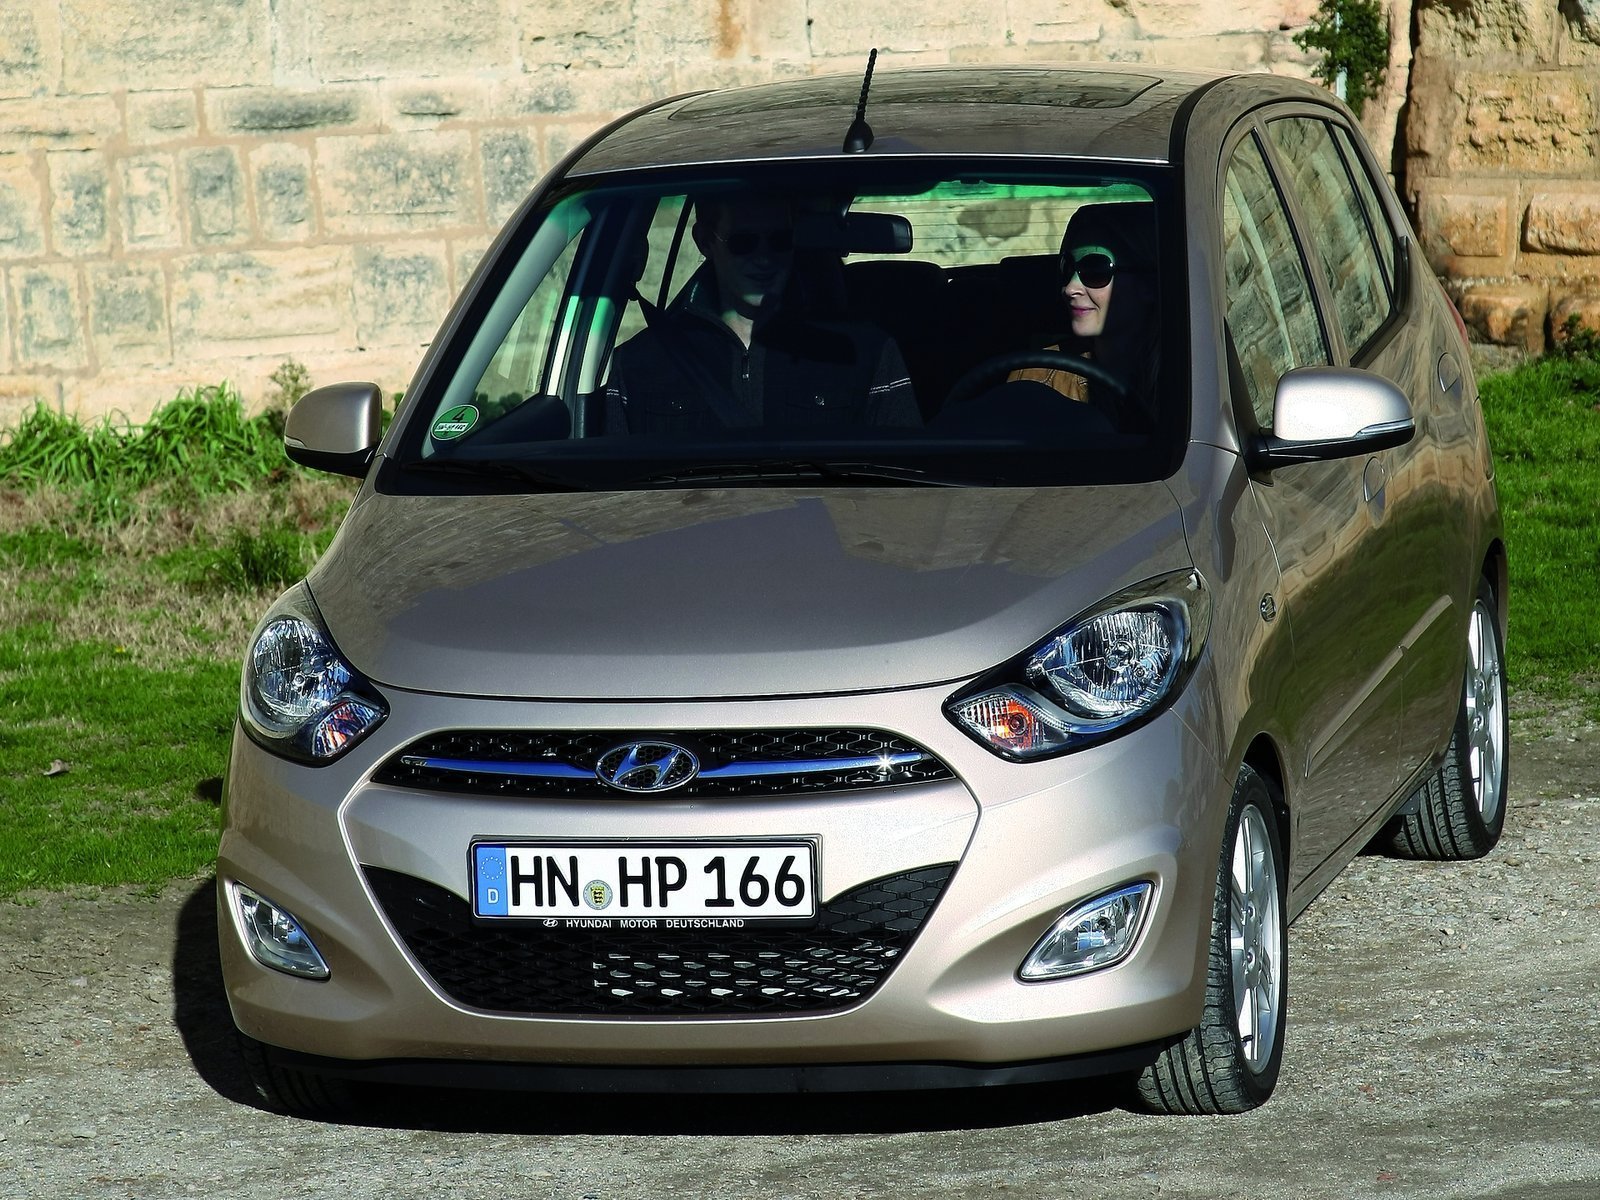 Tải ảnh Hyundai i10 Hatchback chất lượng cao miễn phí 2